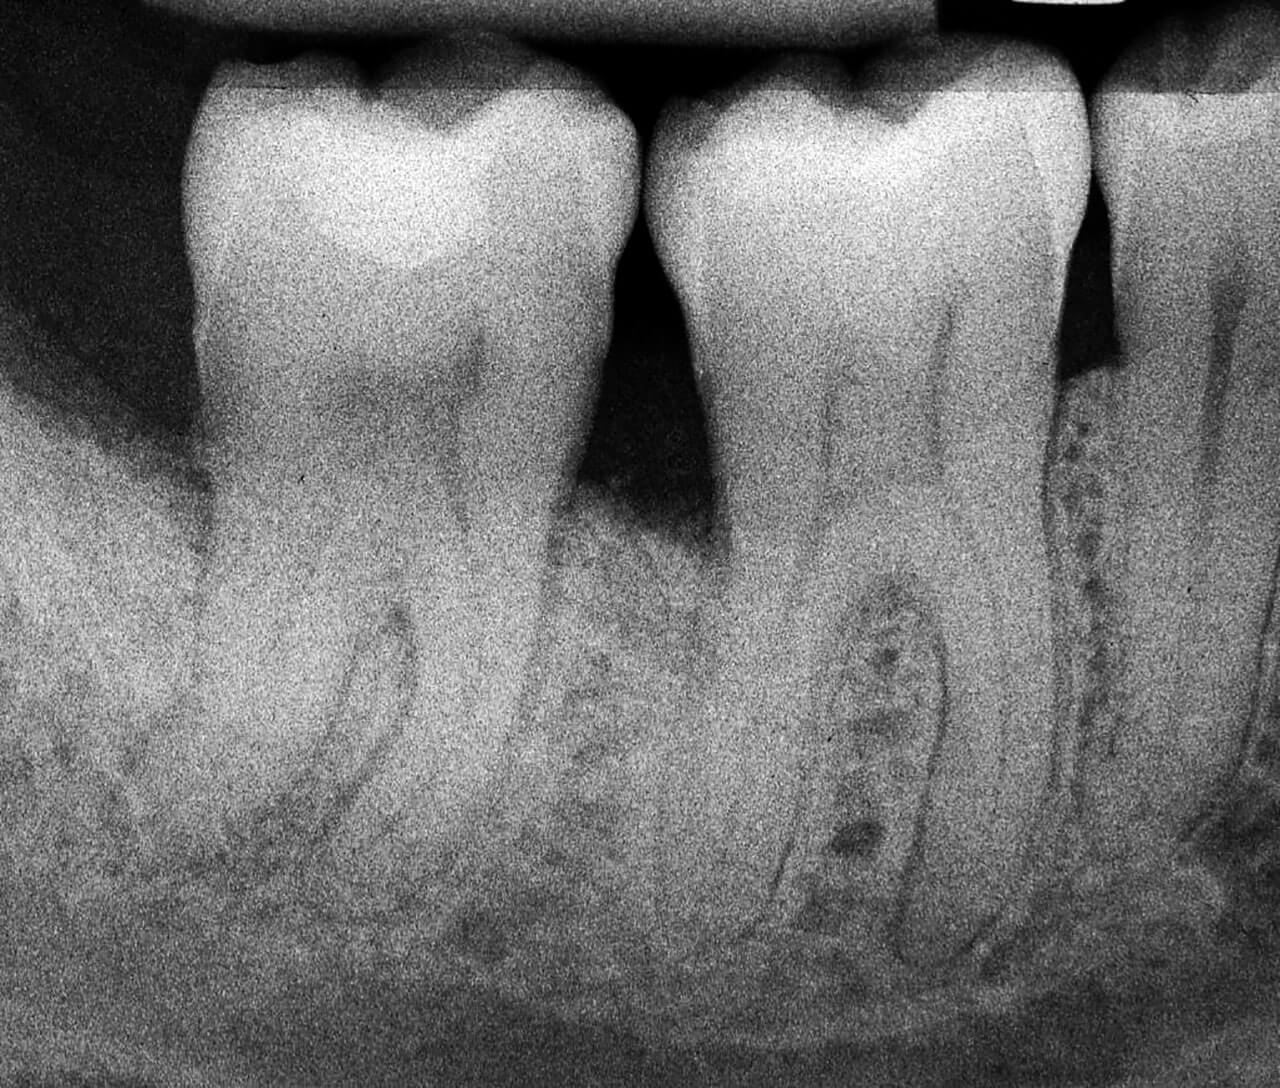 Abb. 14  Die intraoperative Röntgenaufnahme 2 Jahre nach Therapie zeigt eine fast komplette knöcherne Auffüllung der intraossären Komponenten an den Zähnen 46 und 47.